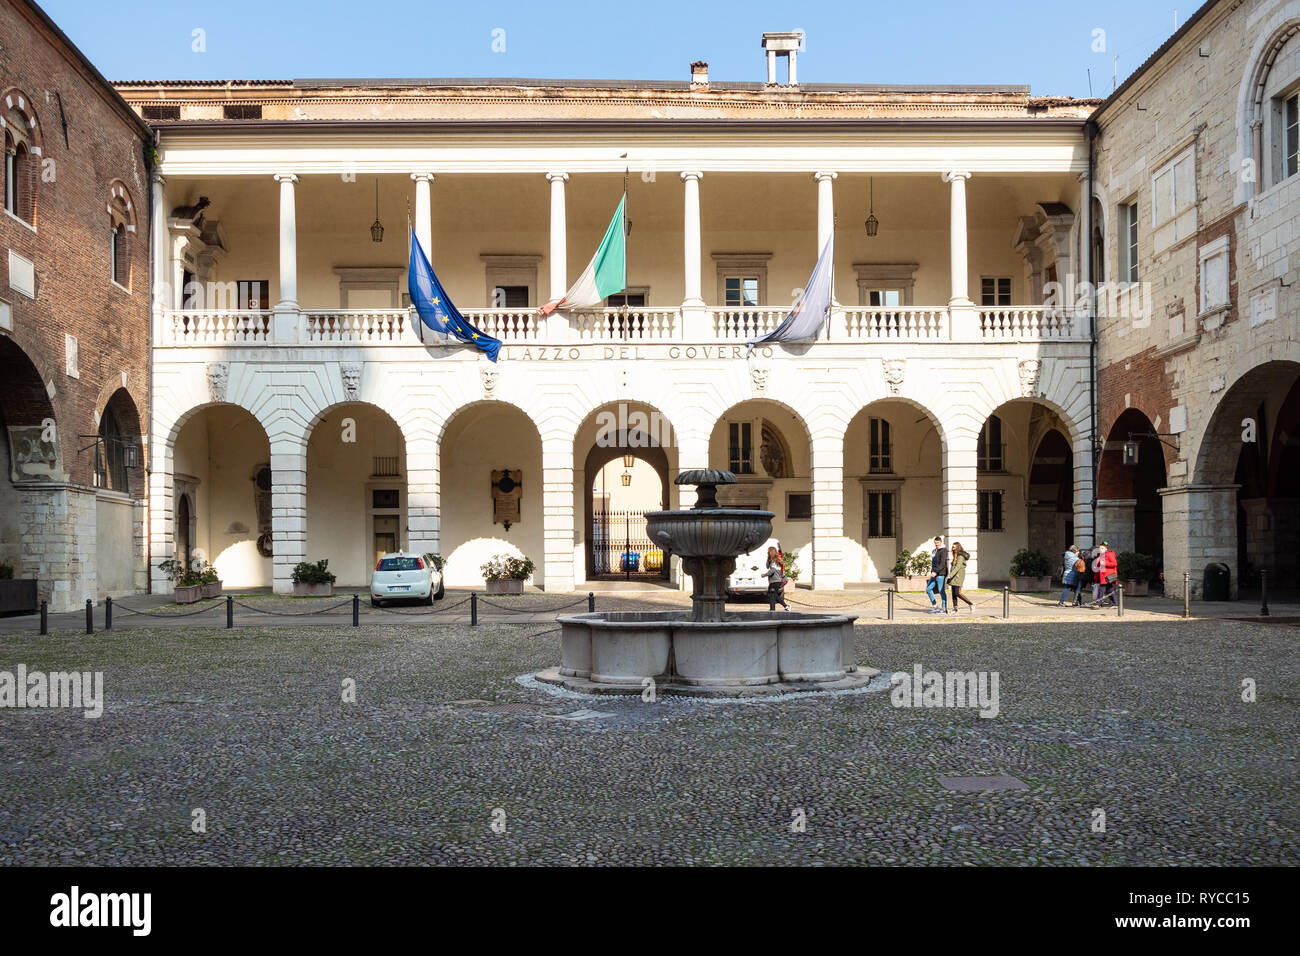 BRESCIA, ITALIE - février 21, 2019 : les gens dans la cour de palais médiéval Palazzo del Broletto à Brescia ville. Le palais abrite aujourd'hui de l'administration centrale Banque D'Images